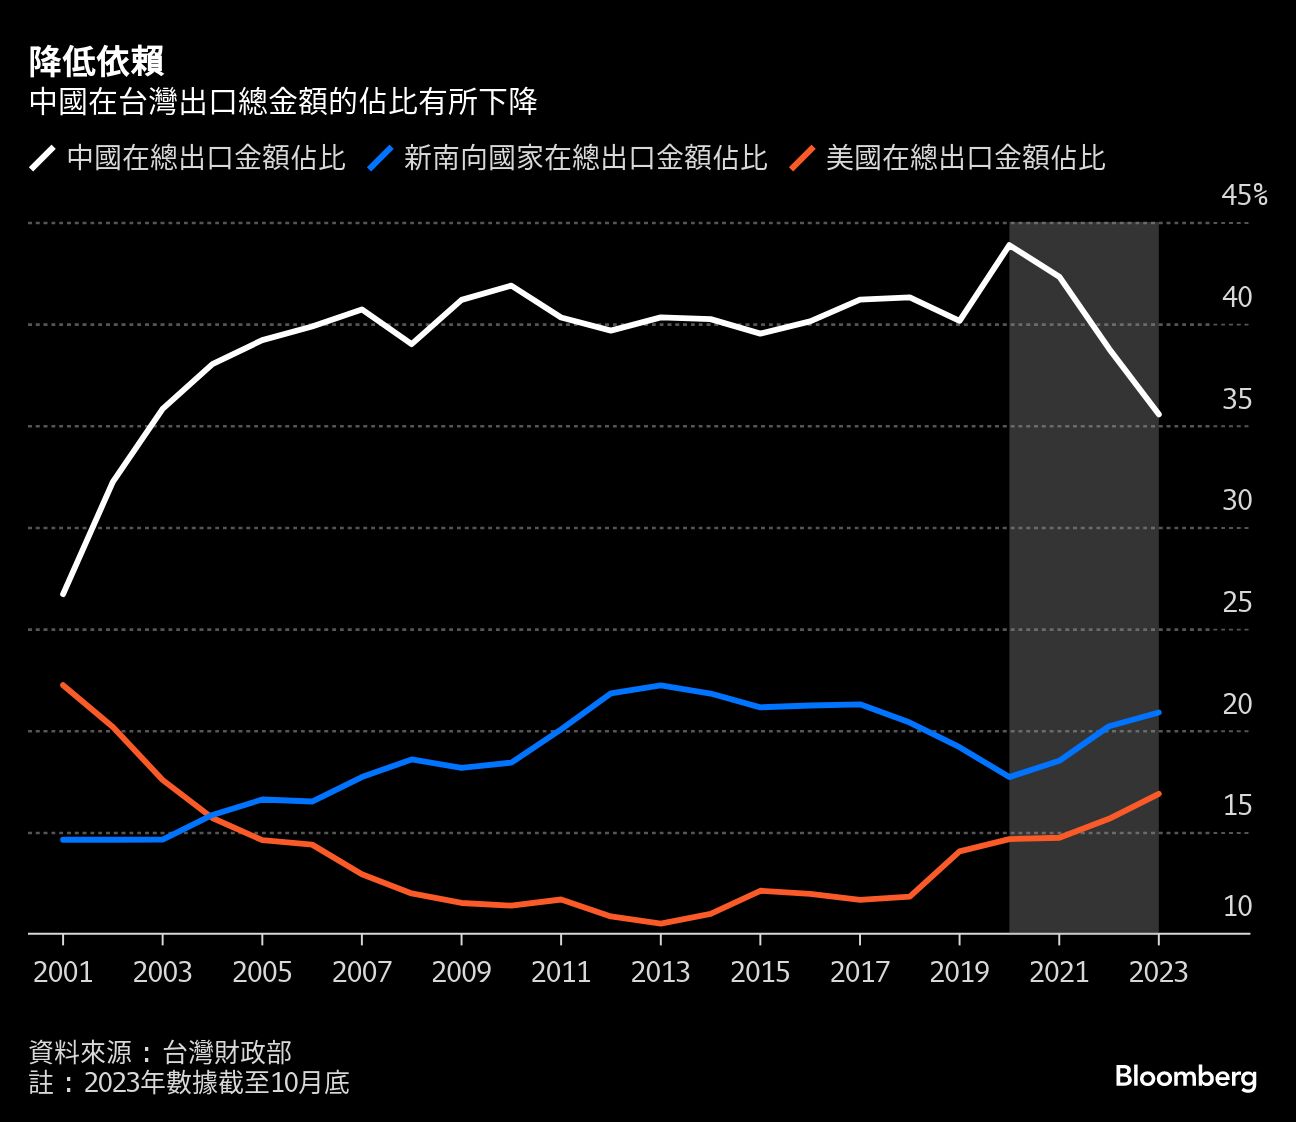 降低依賴 | 中國在台灣出口總金額的佔比有所下降